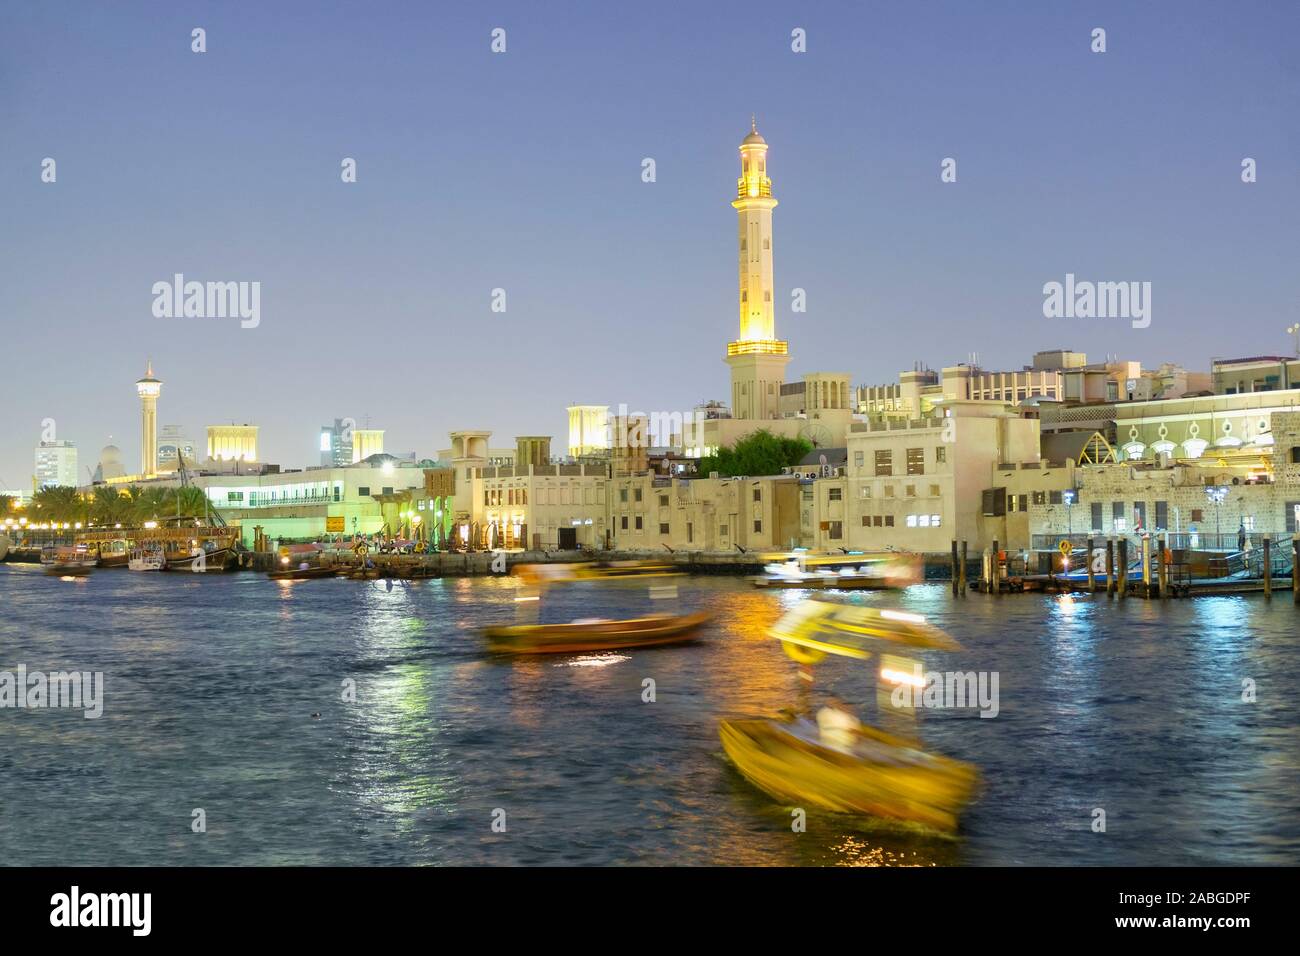 Nachtansicht des Abra Wasser taxis vor The Creek in Deira im alten Dubai Vereinigte Arabische Emirate Stockfoto